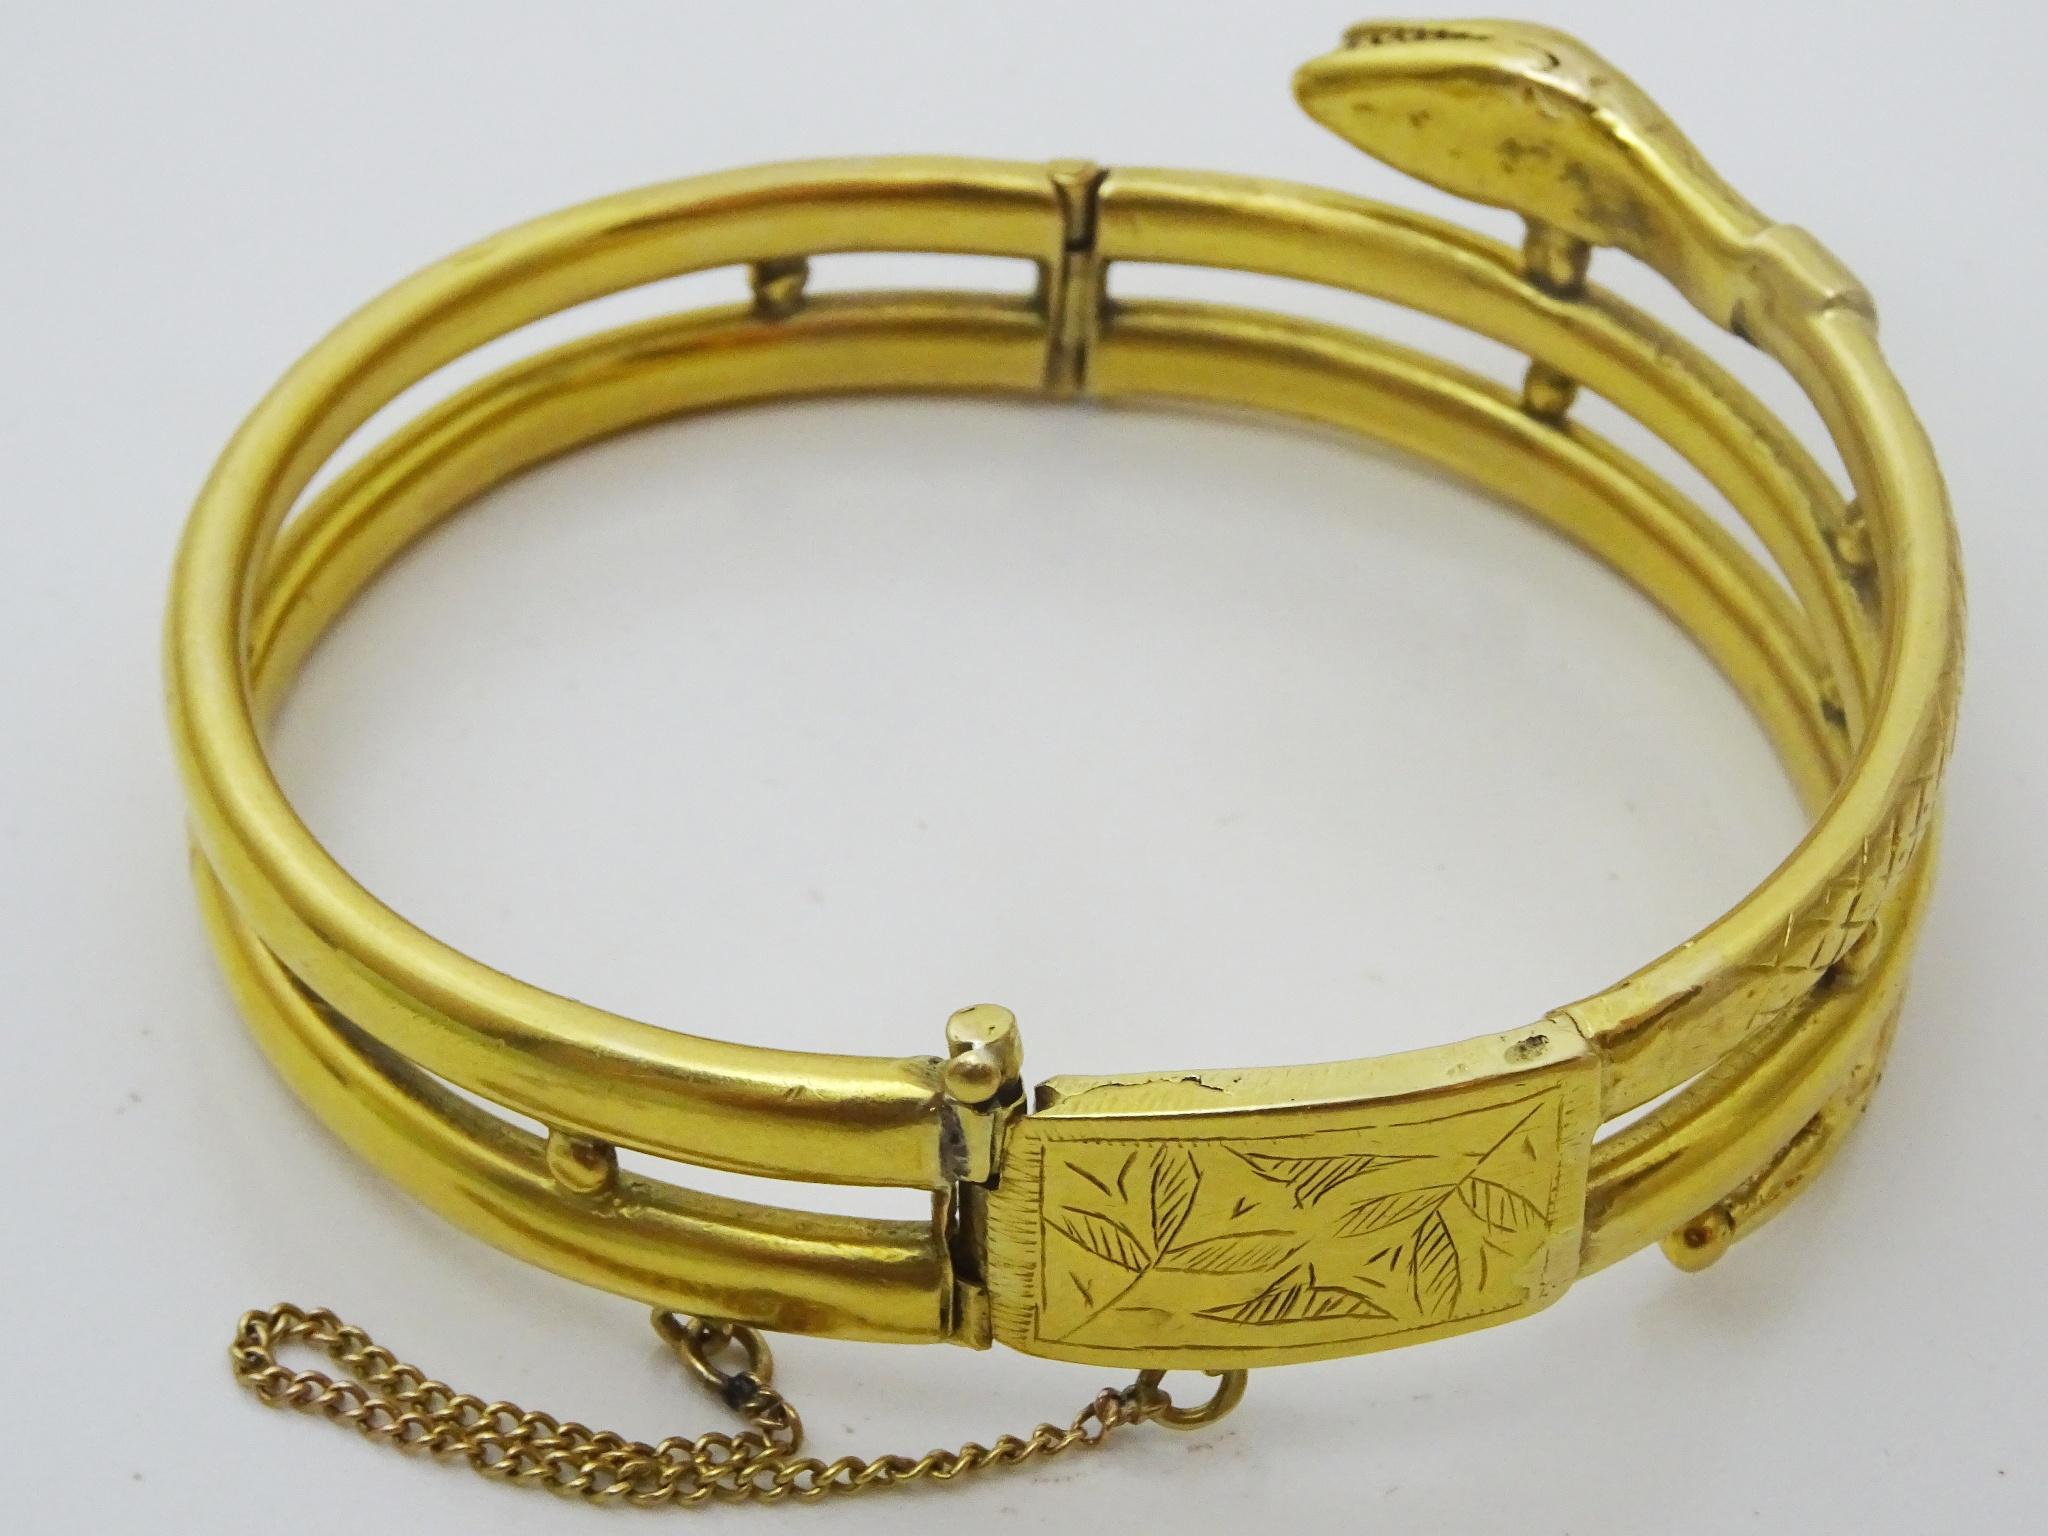 Le serpent est un symbole utilisé en bijouterie (principalement des bagues et des bracelets) depuis des siècles,
 La perte de la peau du serpent symbolise le rajeunissement.
 Parmi les autres symboles, on trouve ceux du bien, du mal, de la sagesse